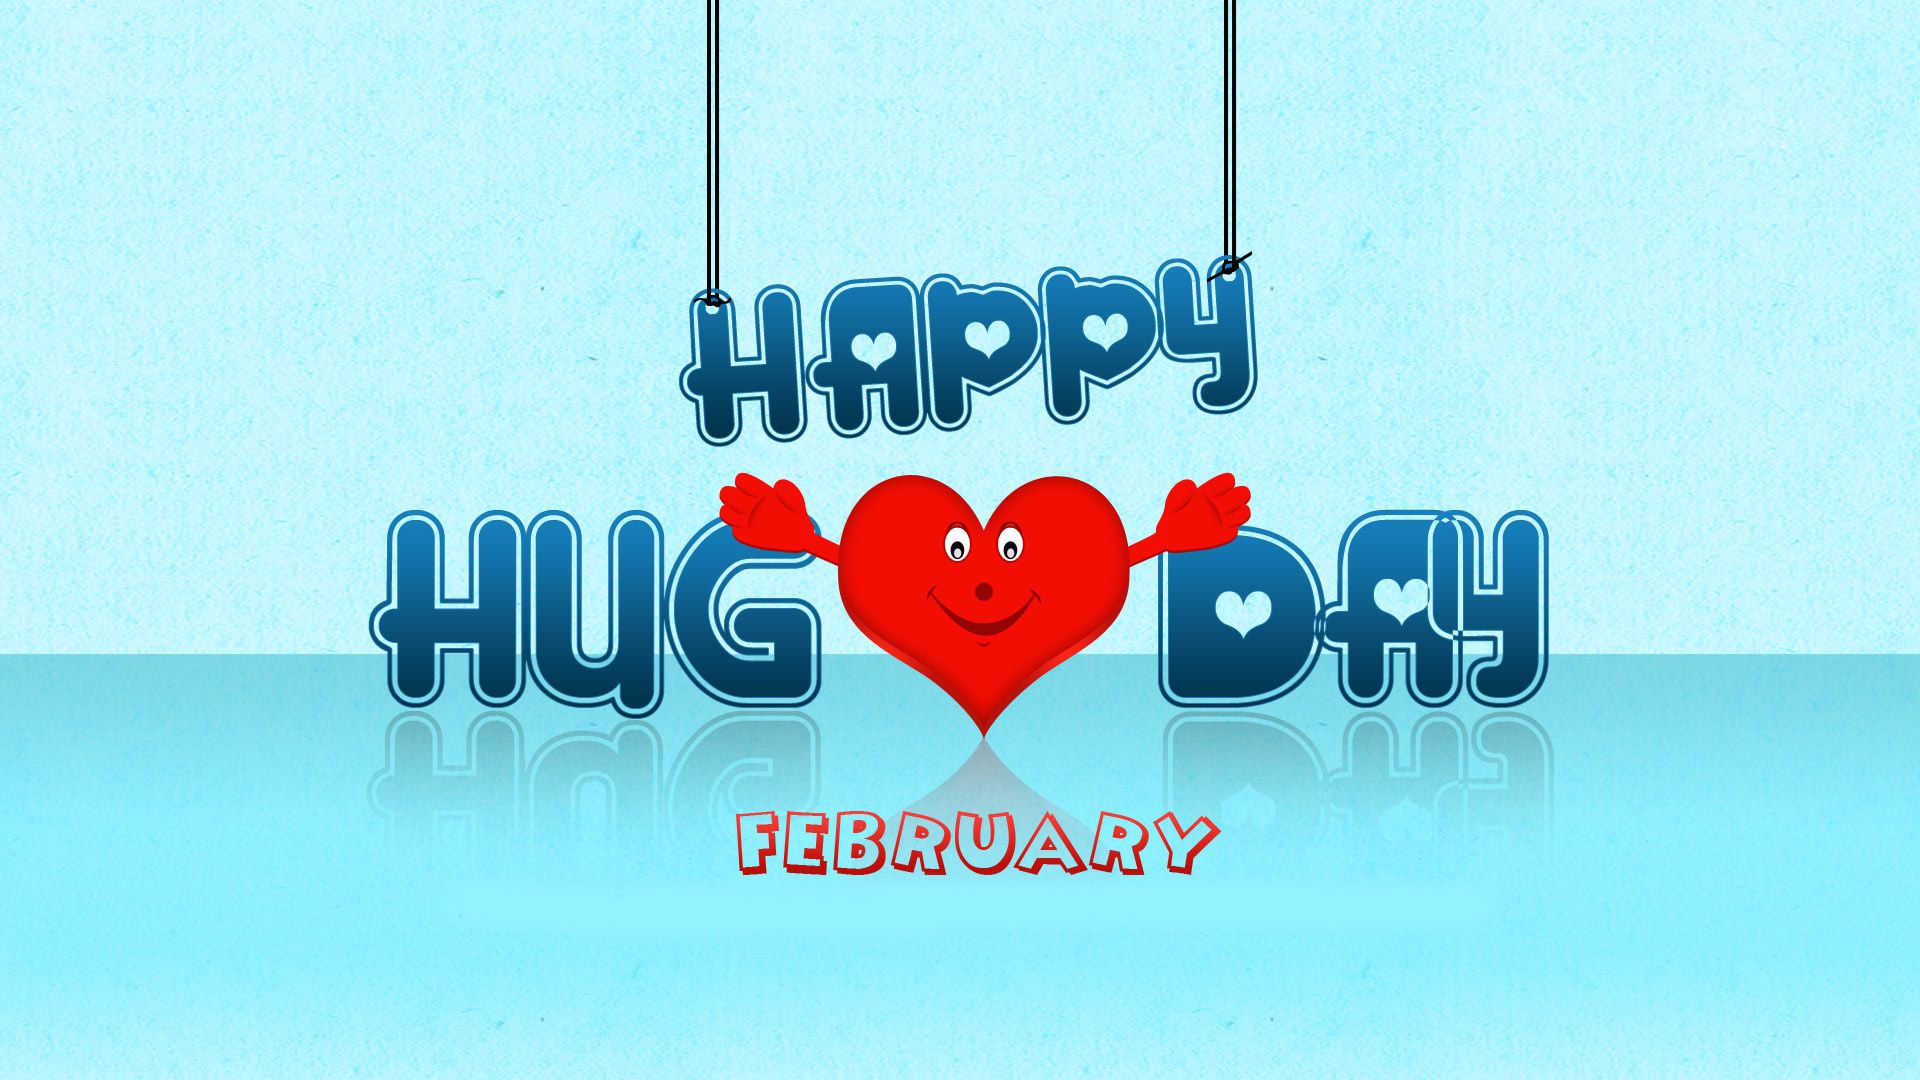 Download Best Hug Day Wallpapers for Mobile & Desktop